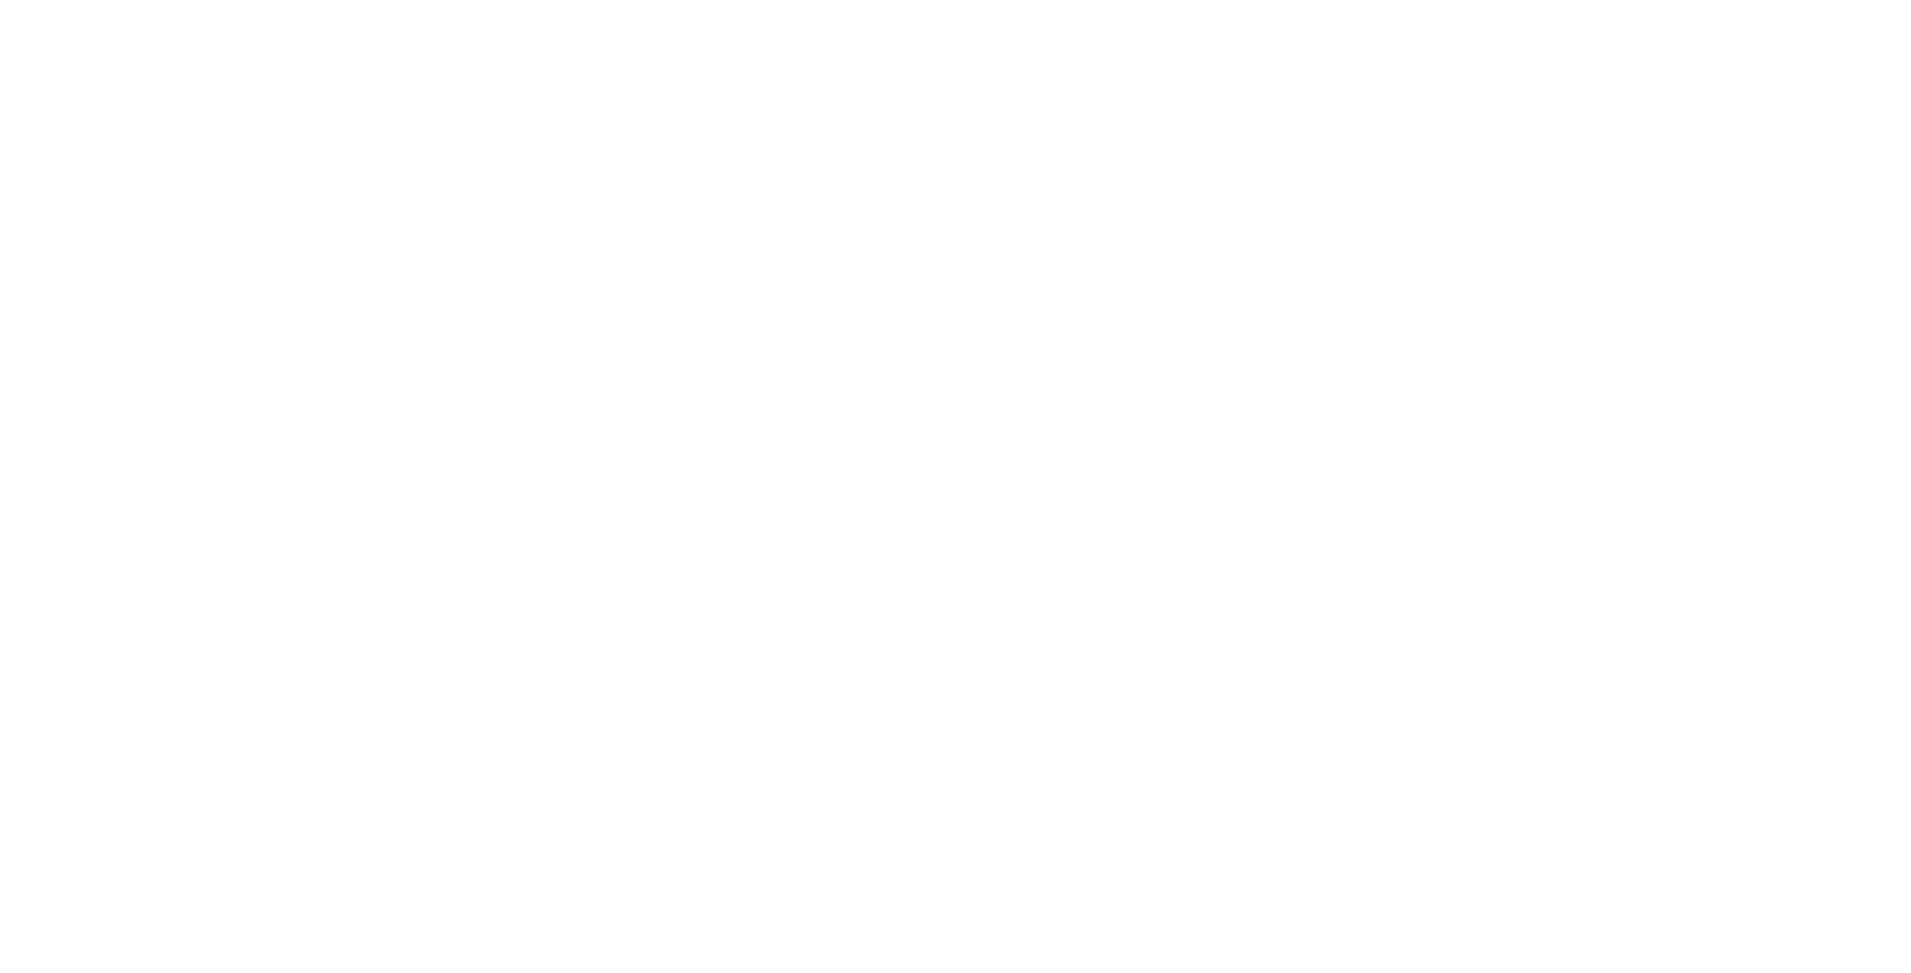 Théâtre Beaumont Saint-Michel